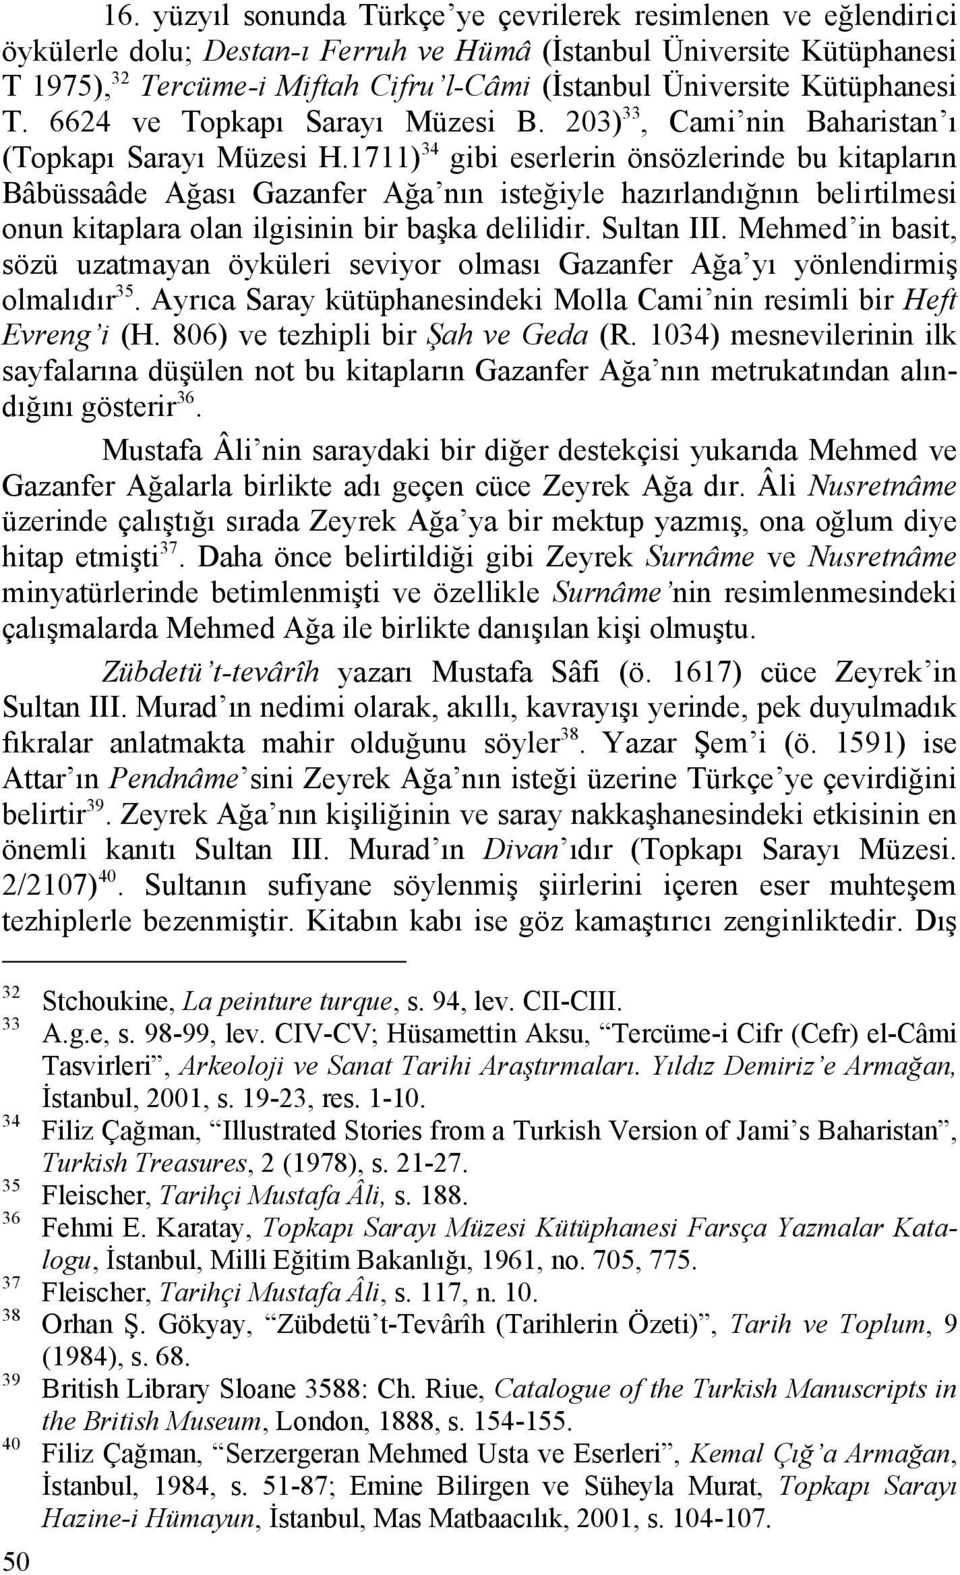 1711) 34 gibi eserlerin önsözlerinde bu kitapların Bâbüssaâde Ağası Gazanfer Ağa nın isteğiyle hazırlandığnın belirtilmesi onun kitaplara olan ilgisinin bir başka delilidir. Sultan III.